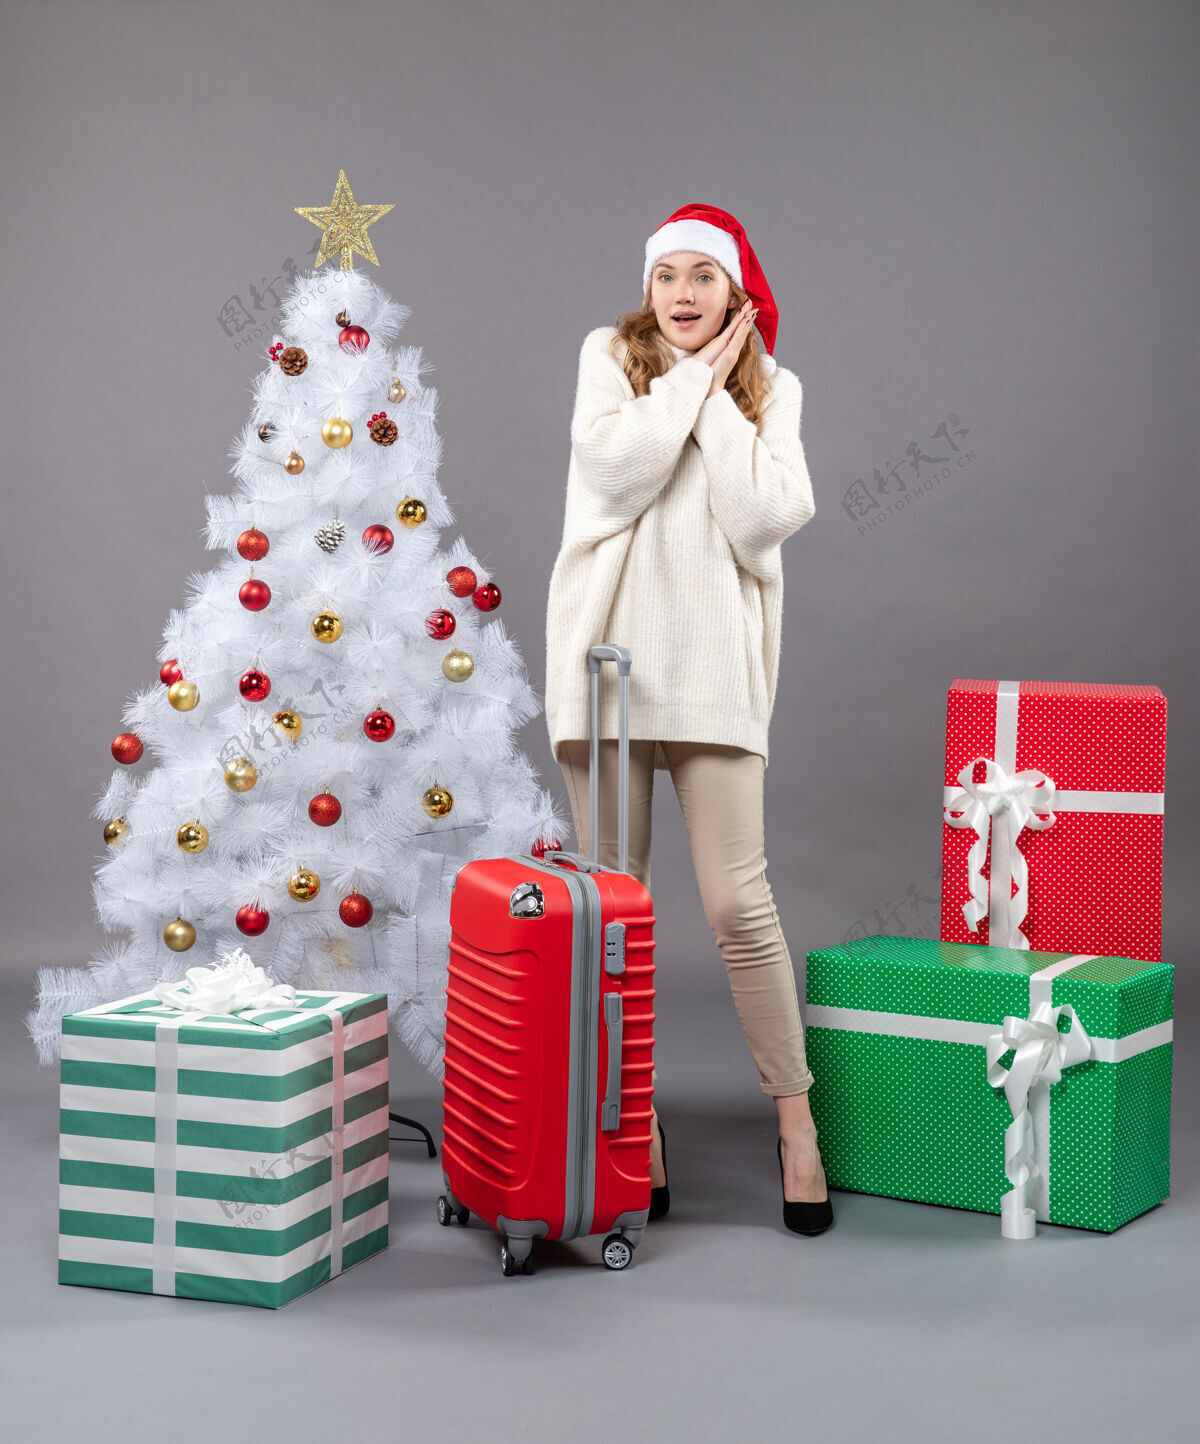 人前视图惊讶的女孩戴着圣诞帽站在白色圣诞树和礼品盒附近惊奇女孩站着圣诞树